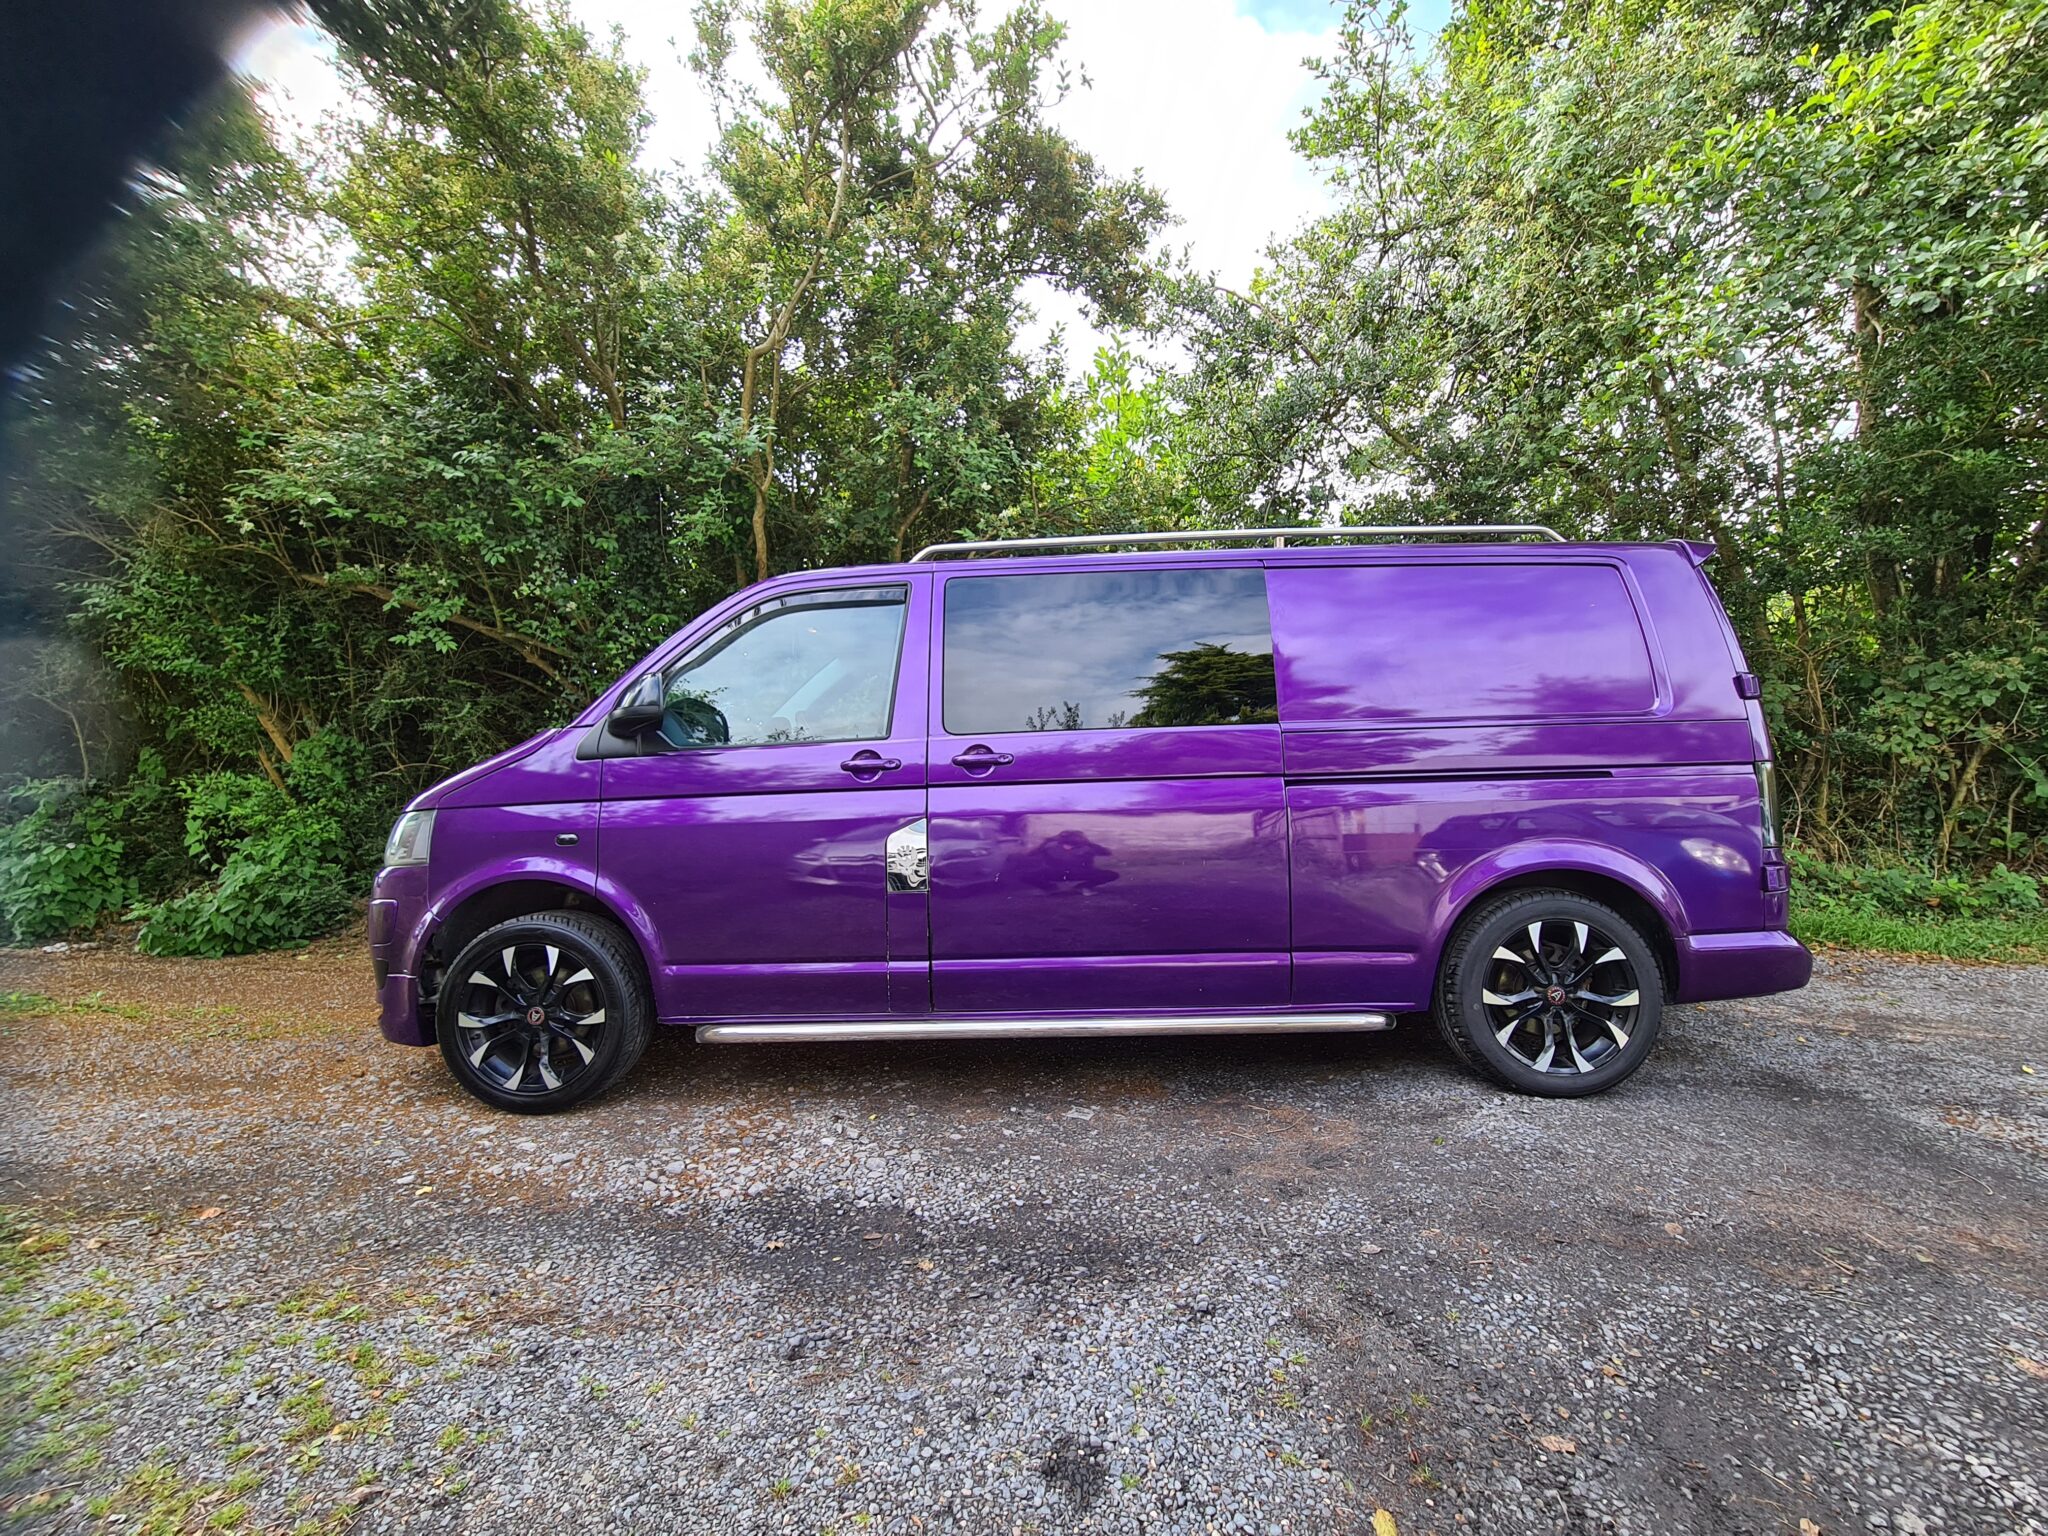 Volkswagon transporter t5 camper van 2010 in purple. ⋆ Quirky Campers